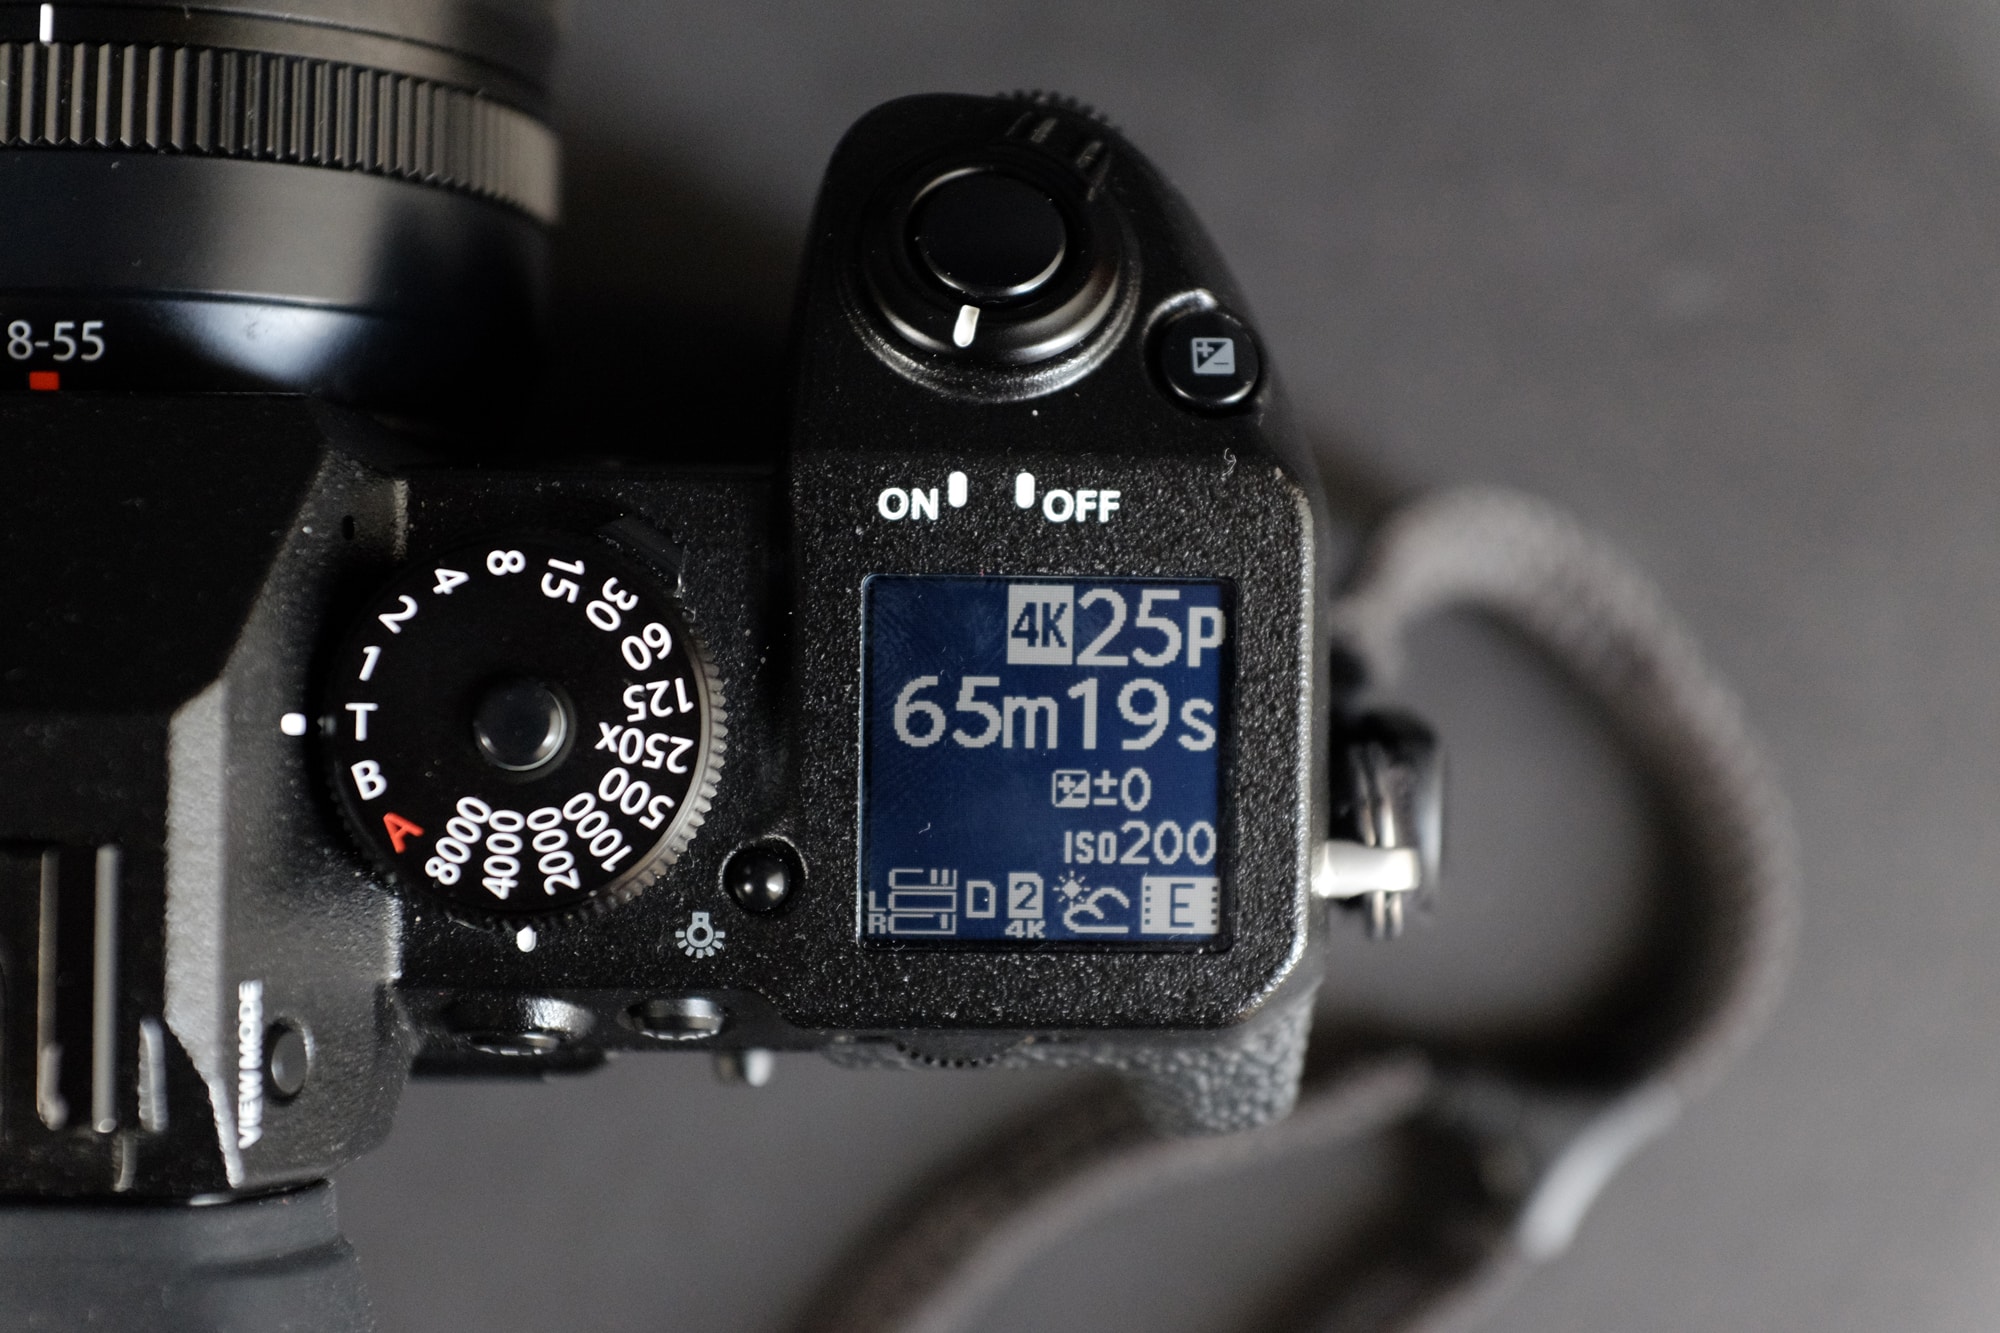 Tổng hợp những gì đã biết về Fujifilm X-H2 và X-H2S: Loạt máy ảnh mới của Fujifilm có gì đáng mong đợi